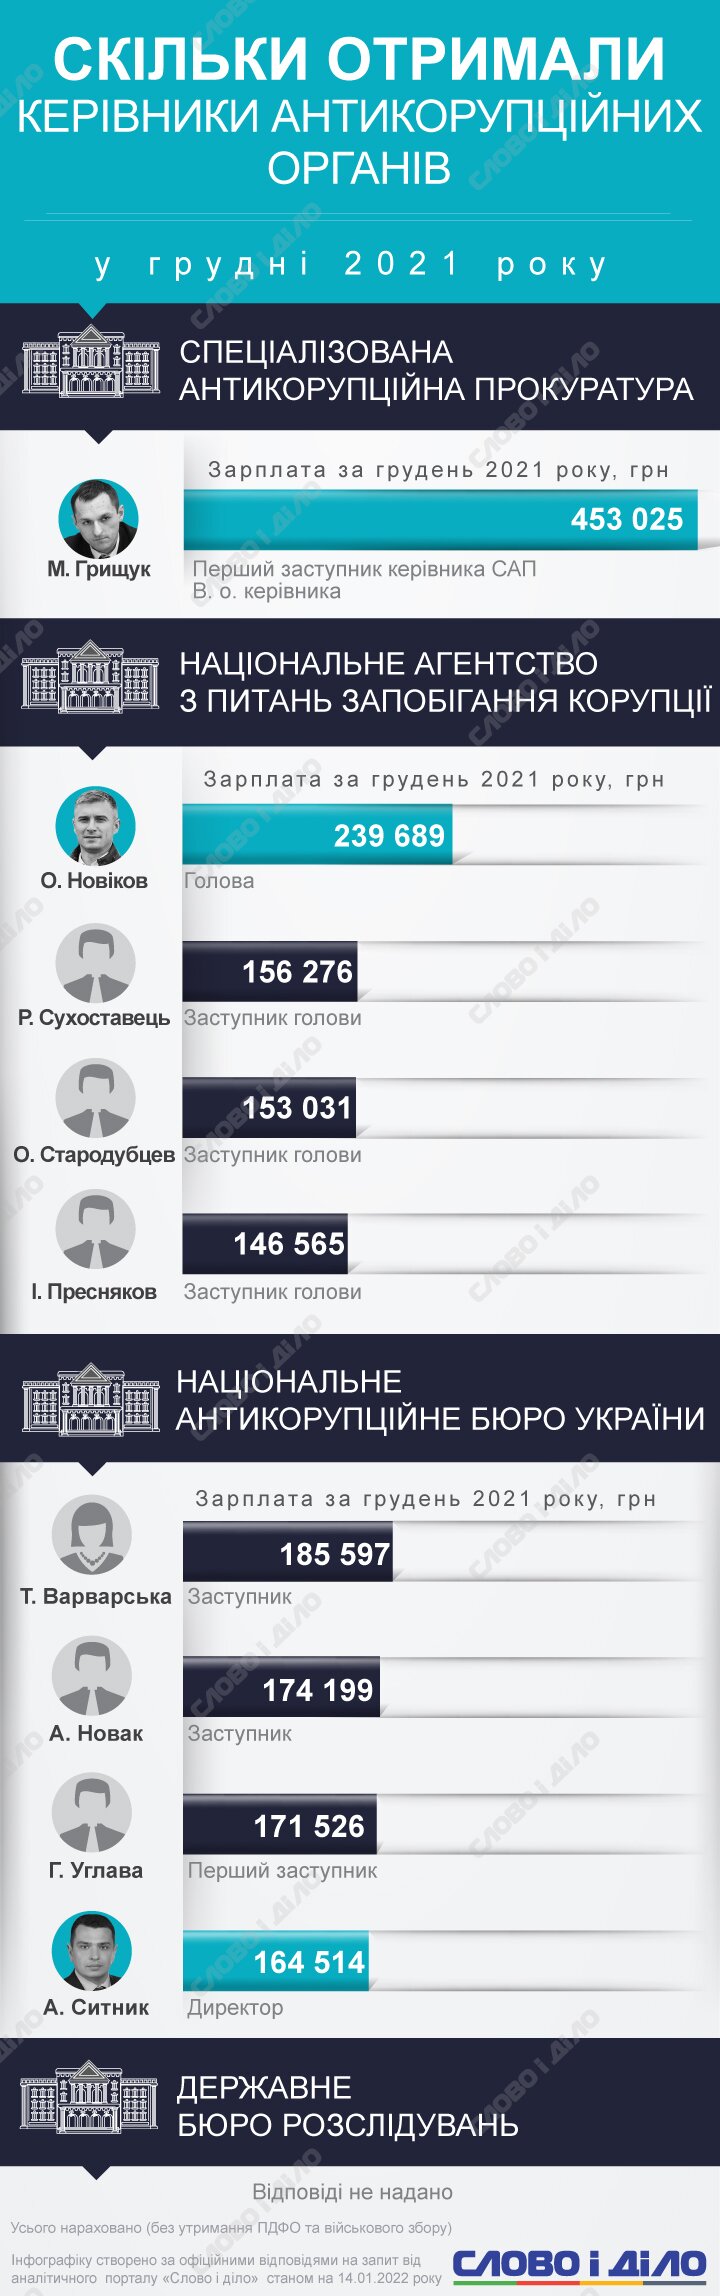 Самая высокая зарплата в декабре была у и.о. руководителя САП Максима Грищука – больше 450 тысяч гривен.